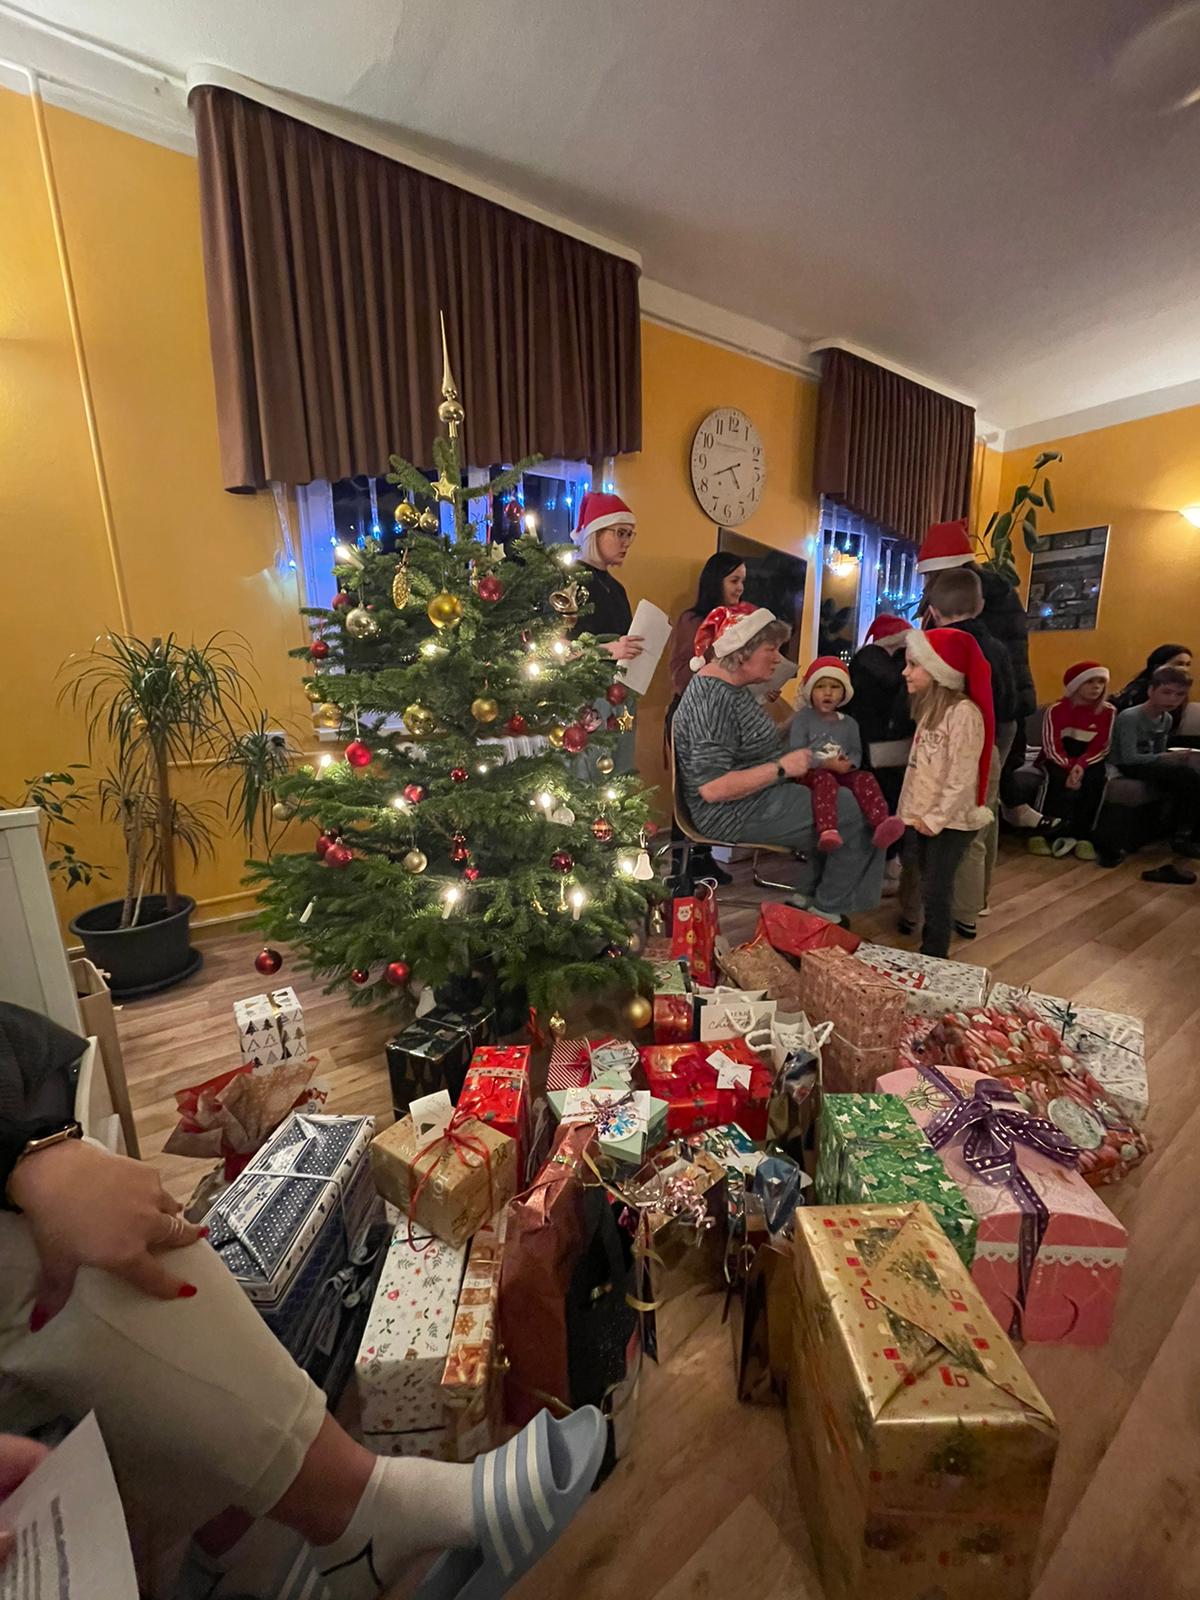 Weihnachtsbaum mit vielen Geschenken und singende Kinder